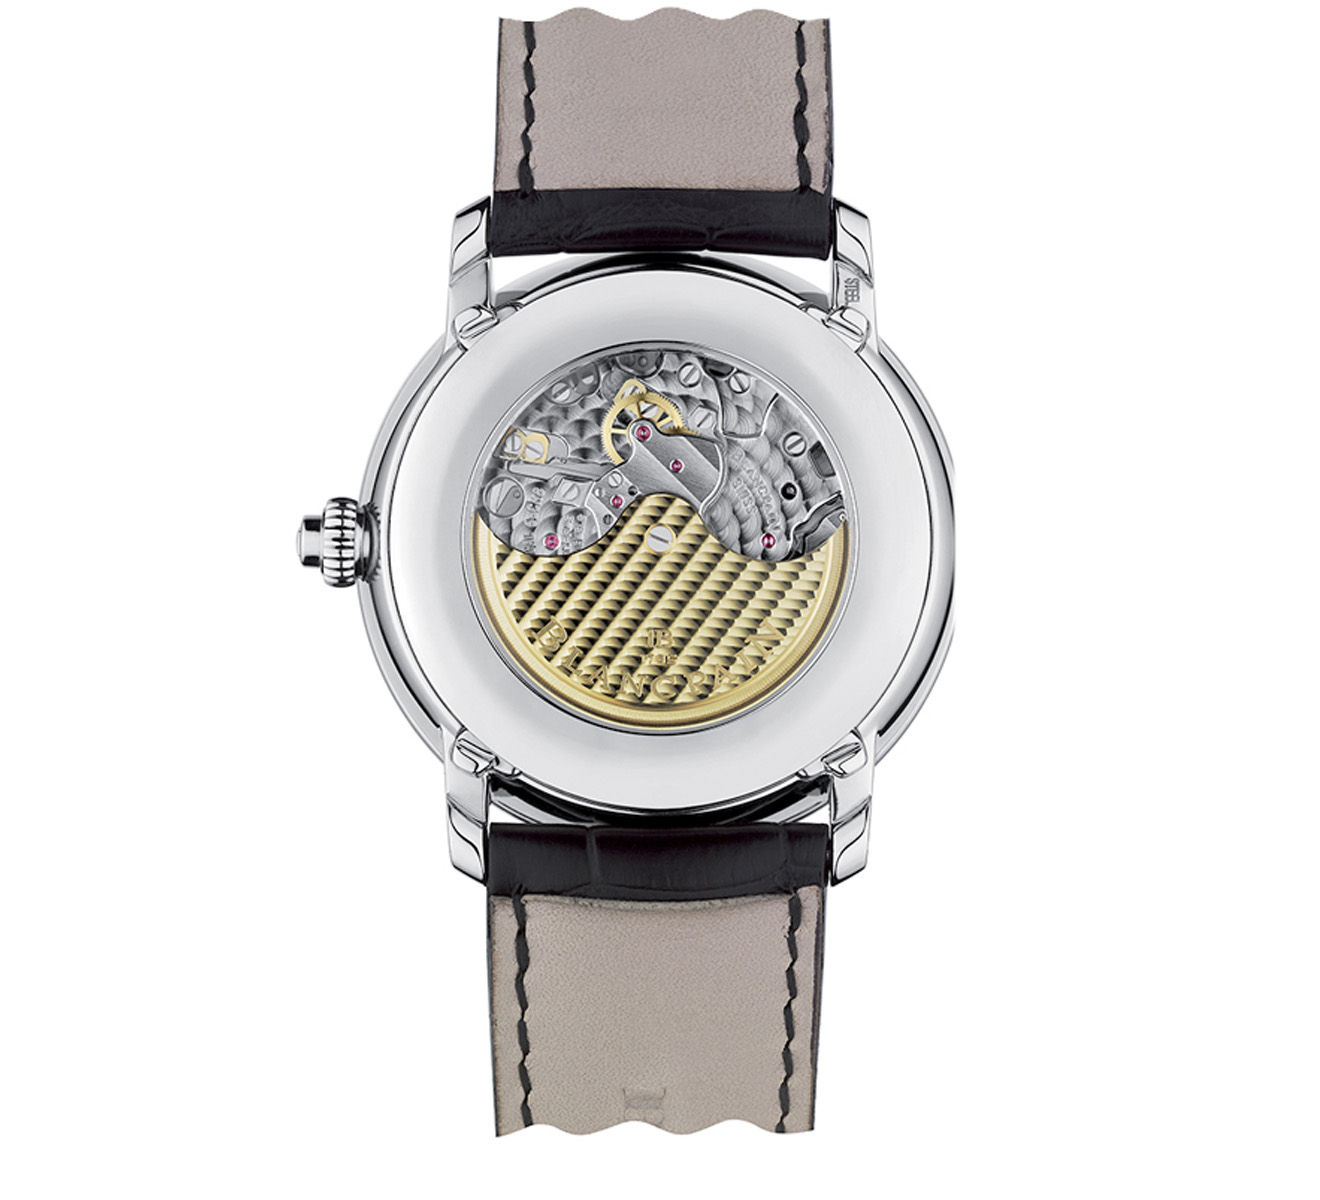 Часы Chronographe Monopoussoir Blancpain Villeret 6685 1127 55B - фото 2 – Mercury